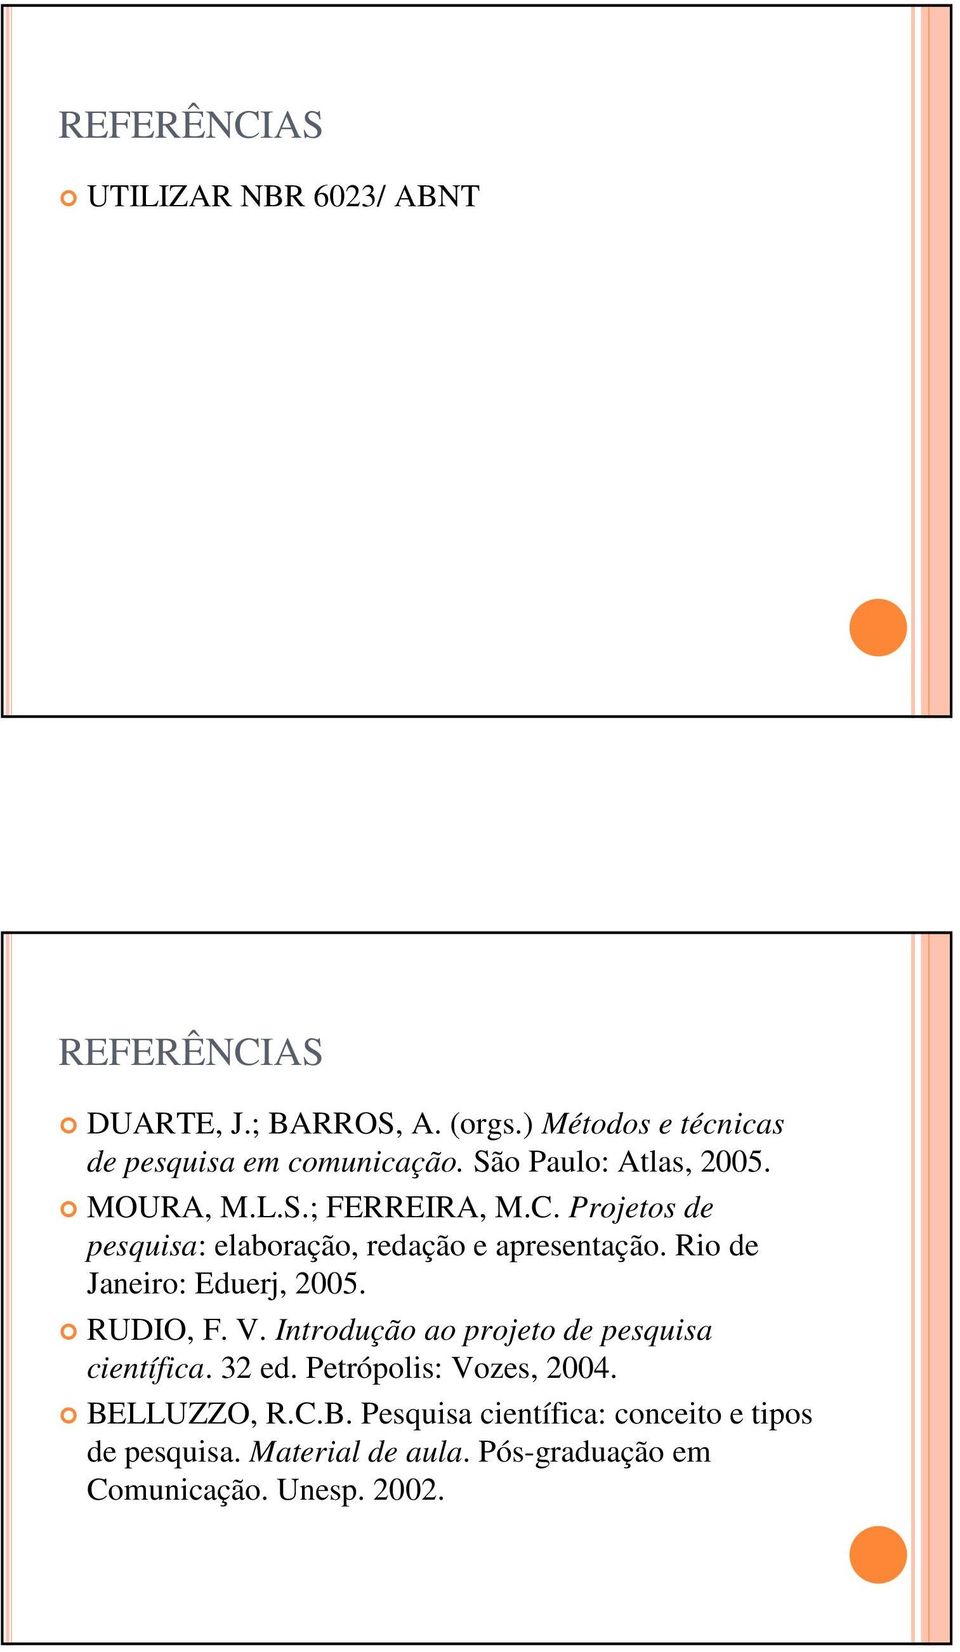 Projetos de pesquisa: elaboração, redação e apresentação. Rio de Janeiro: Eduerj, 2005. RUDIO, F. V.